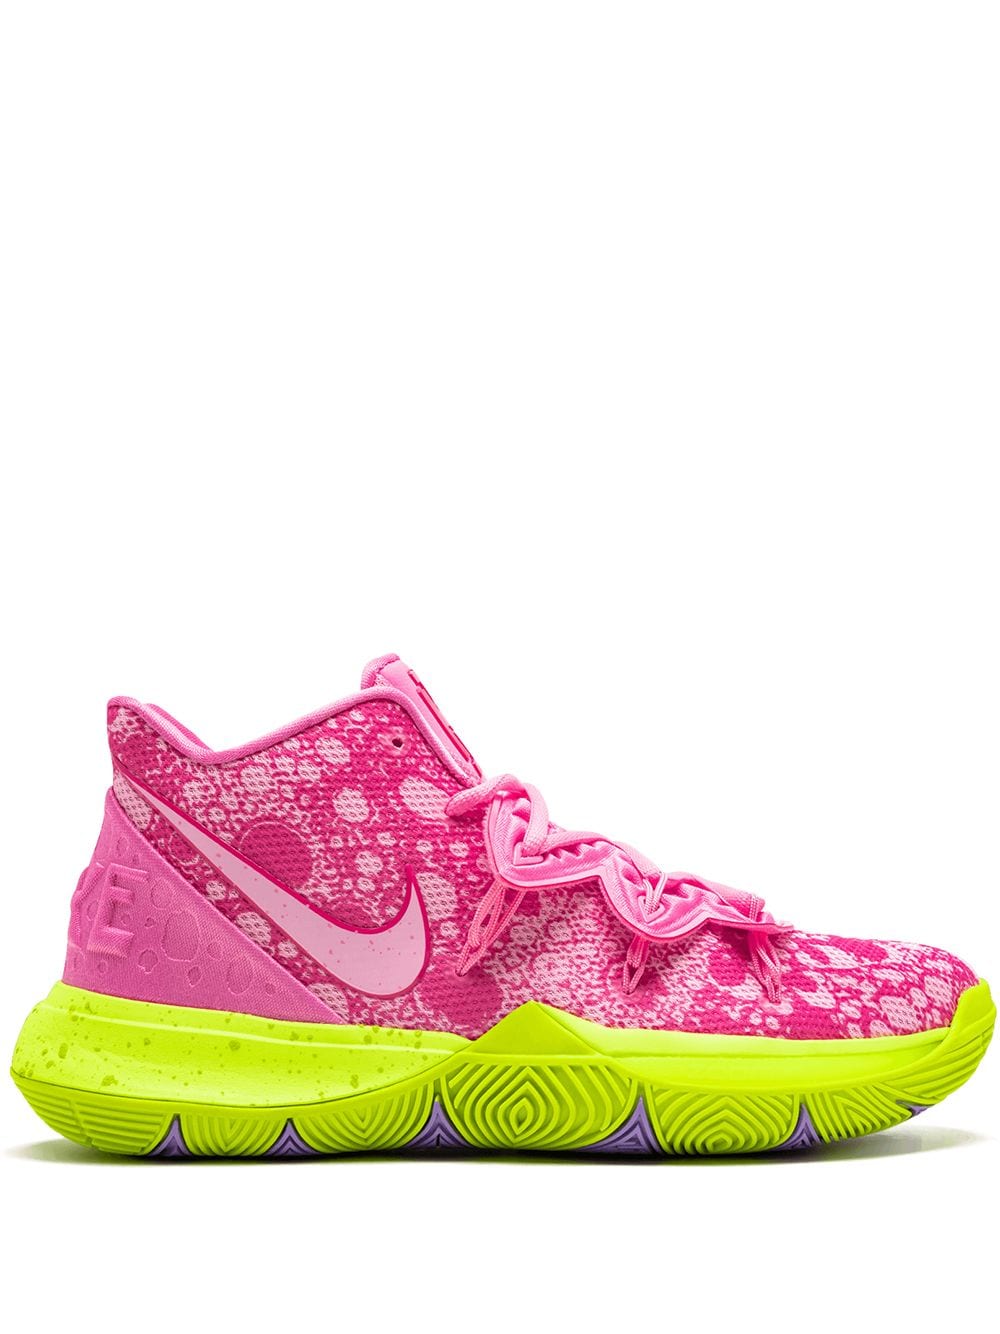 Nike x SpongeBob SquarePants Kyrie 5 "Patrick Star" sneakers - Pink von Nike